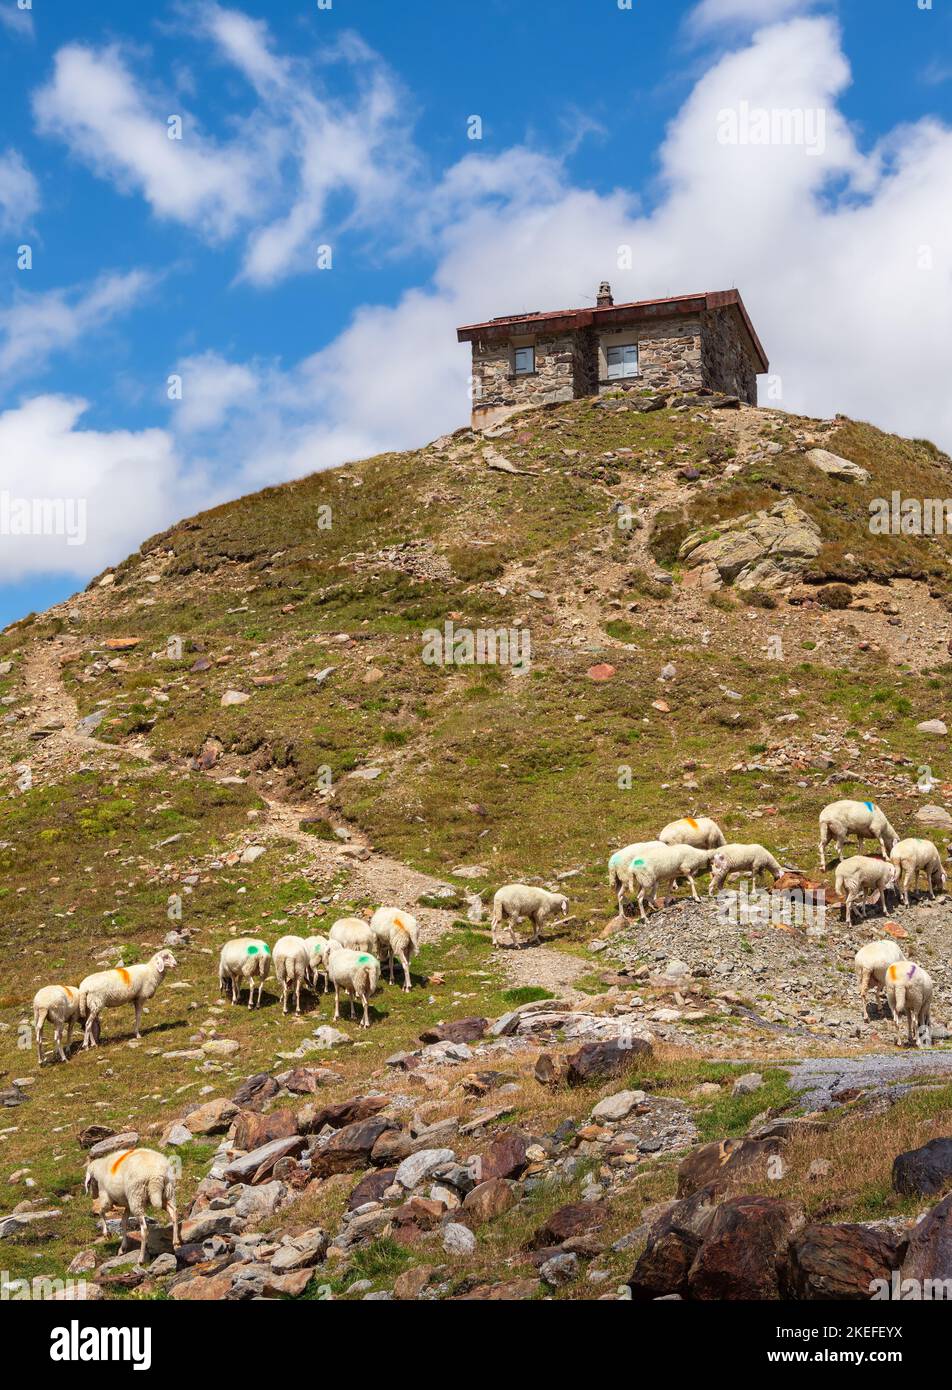 Les moutons se broutent sous l'abri de montagne au col de Timmelsjoch - Passo del Rombo - qui relie les Tyrol en Autriche et en Italie Banque D'Images